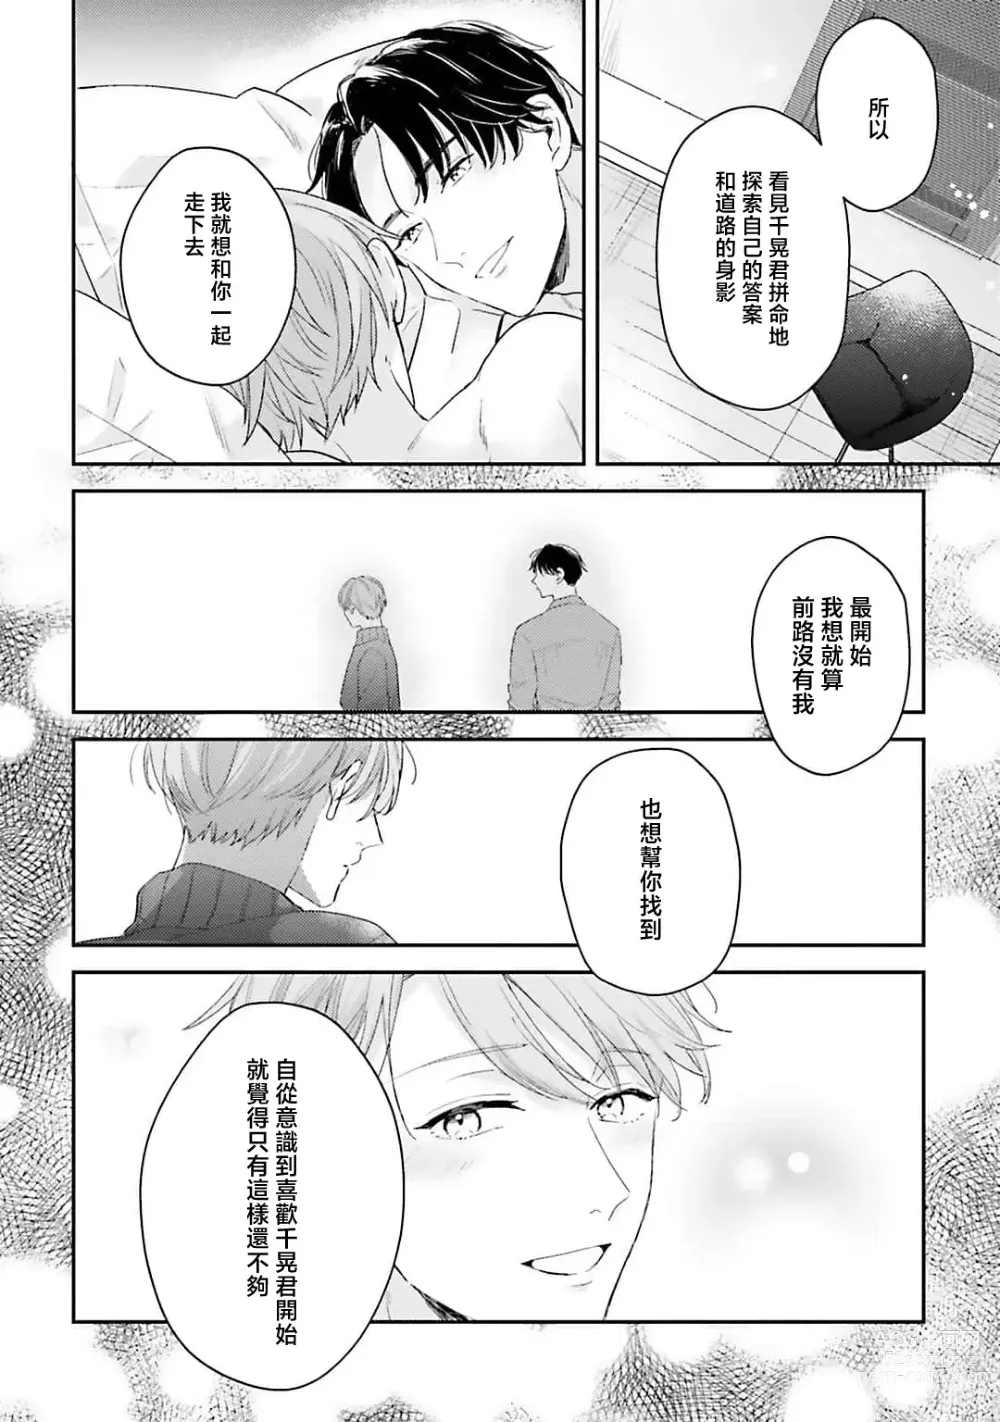 Page 164 of manga 绽放的恋爱皆为醉与甜1-5